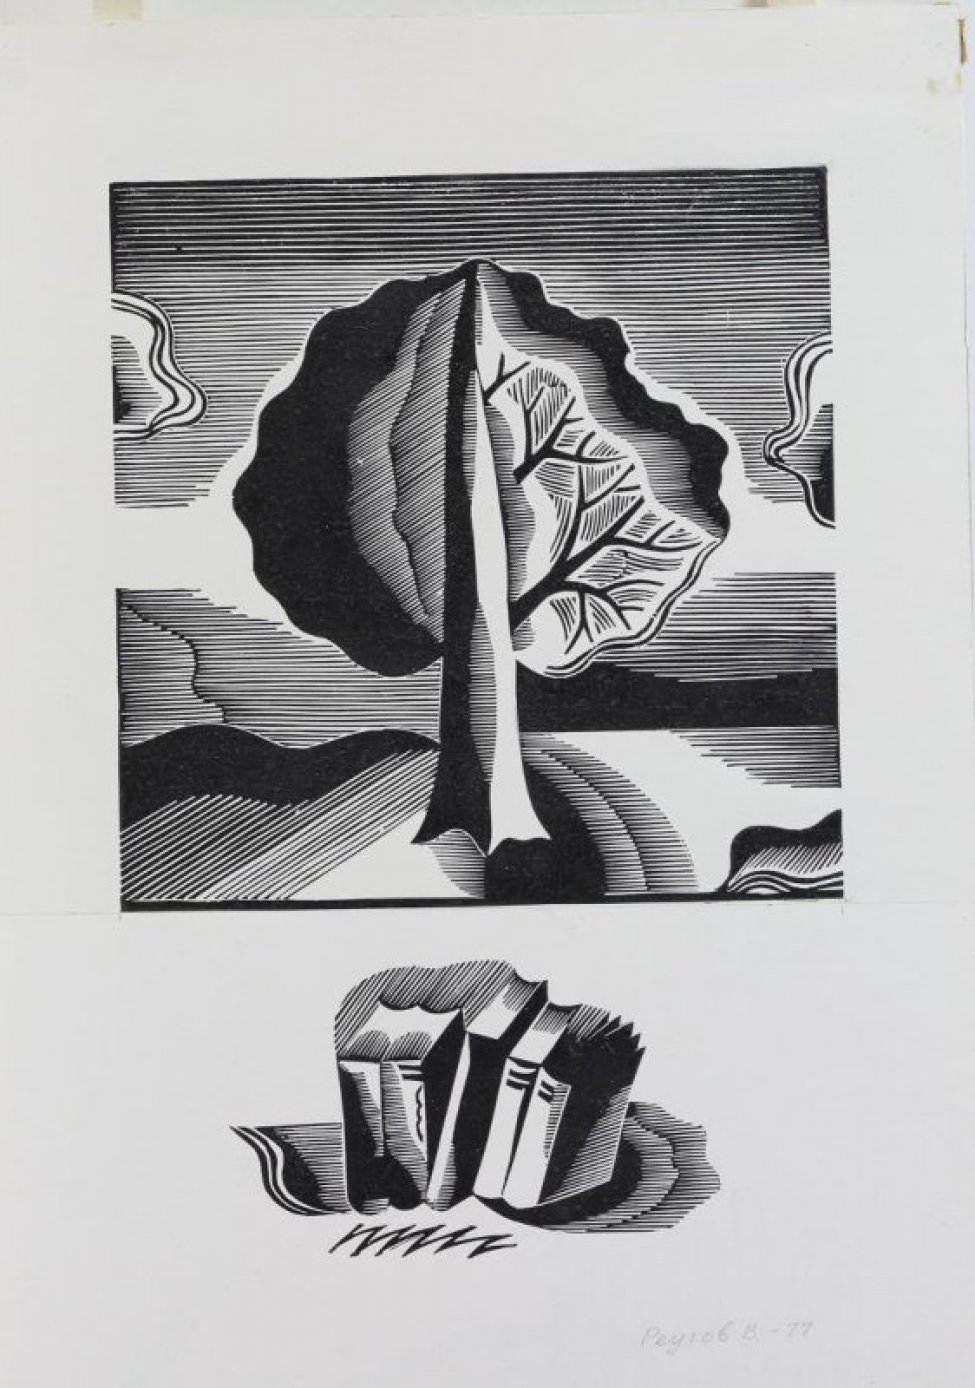 В верхней части композиции - стилизованное изображение пейзажа с одиноким деревом в центре. В нижней части - стоящие в ряд пять книг.